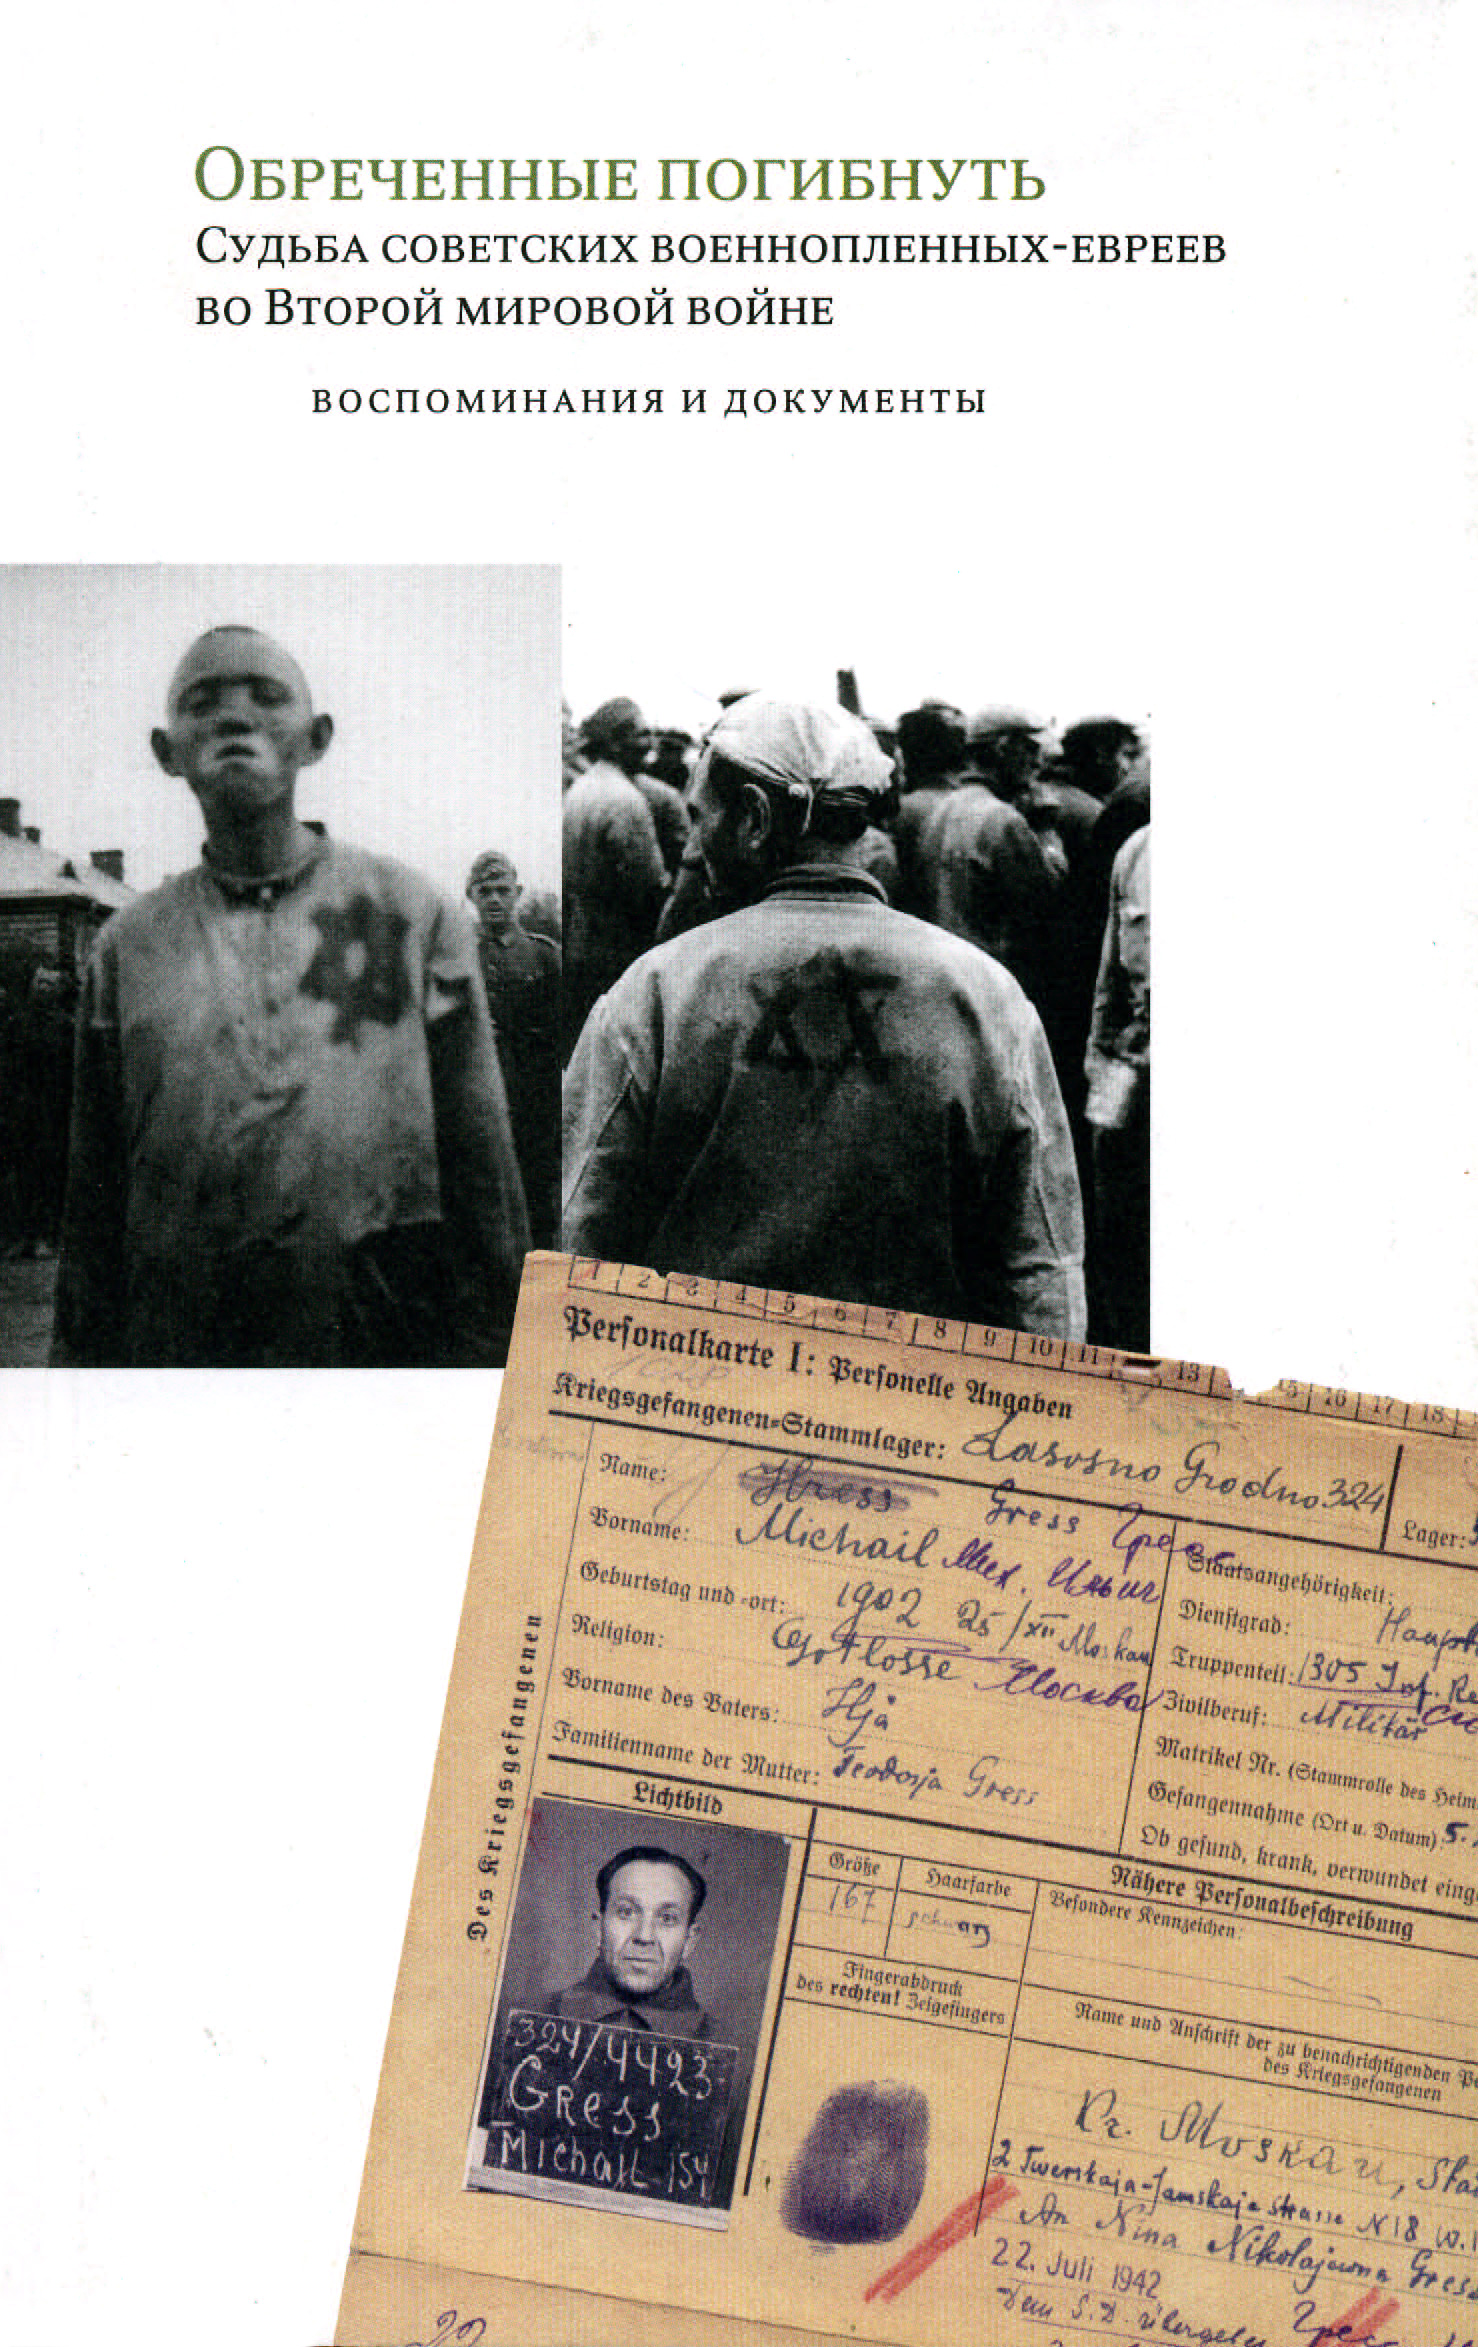 Пленный еврей. Судьба советских военнопленных. Документы о военнопленных. Погибших евреев во второй мировой войне.